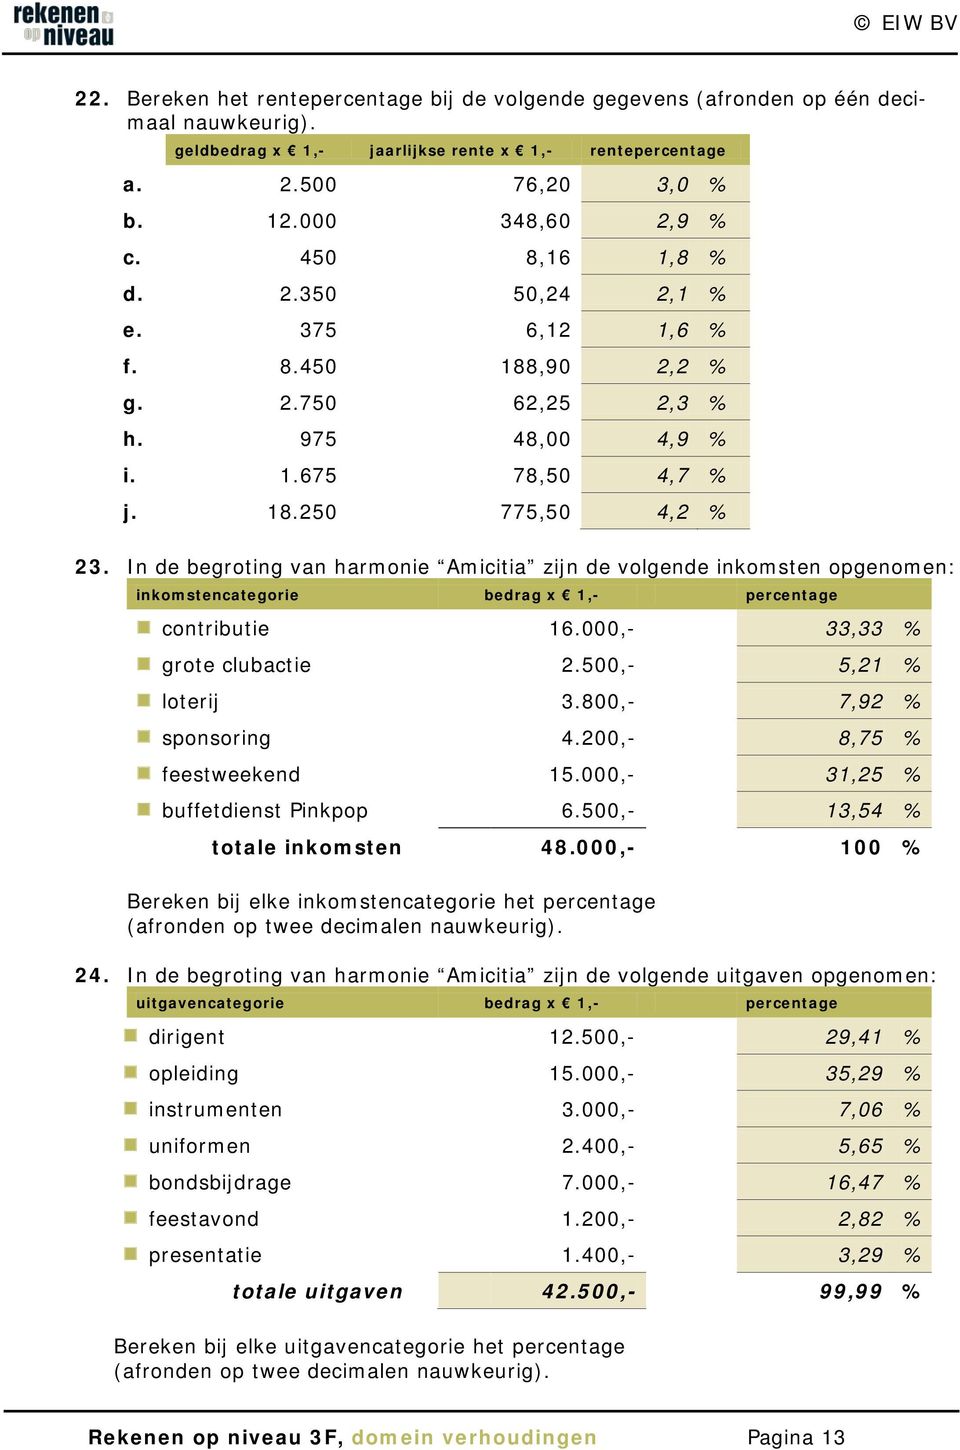 In de begroting van harmonie Amicitia zijn de volgende inkomsten opgenomen: inkomstencategorie bedrag x 1,- percentage contributie 16.000,- 33,33 % grote clubactie 2.500,- 5,21 % loterij 3.